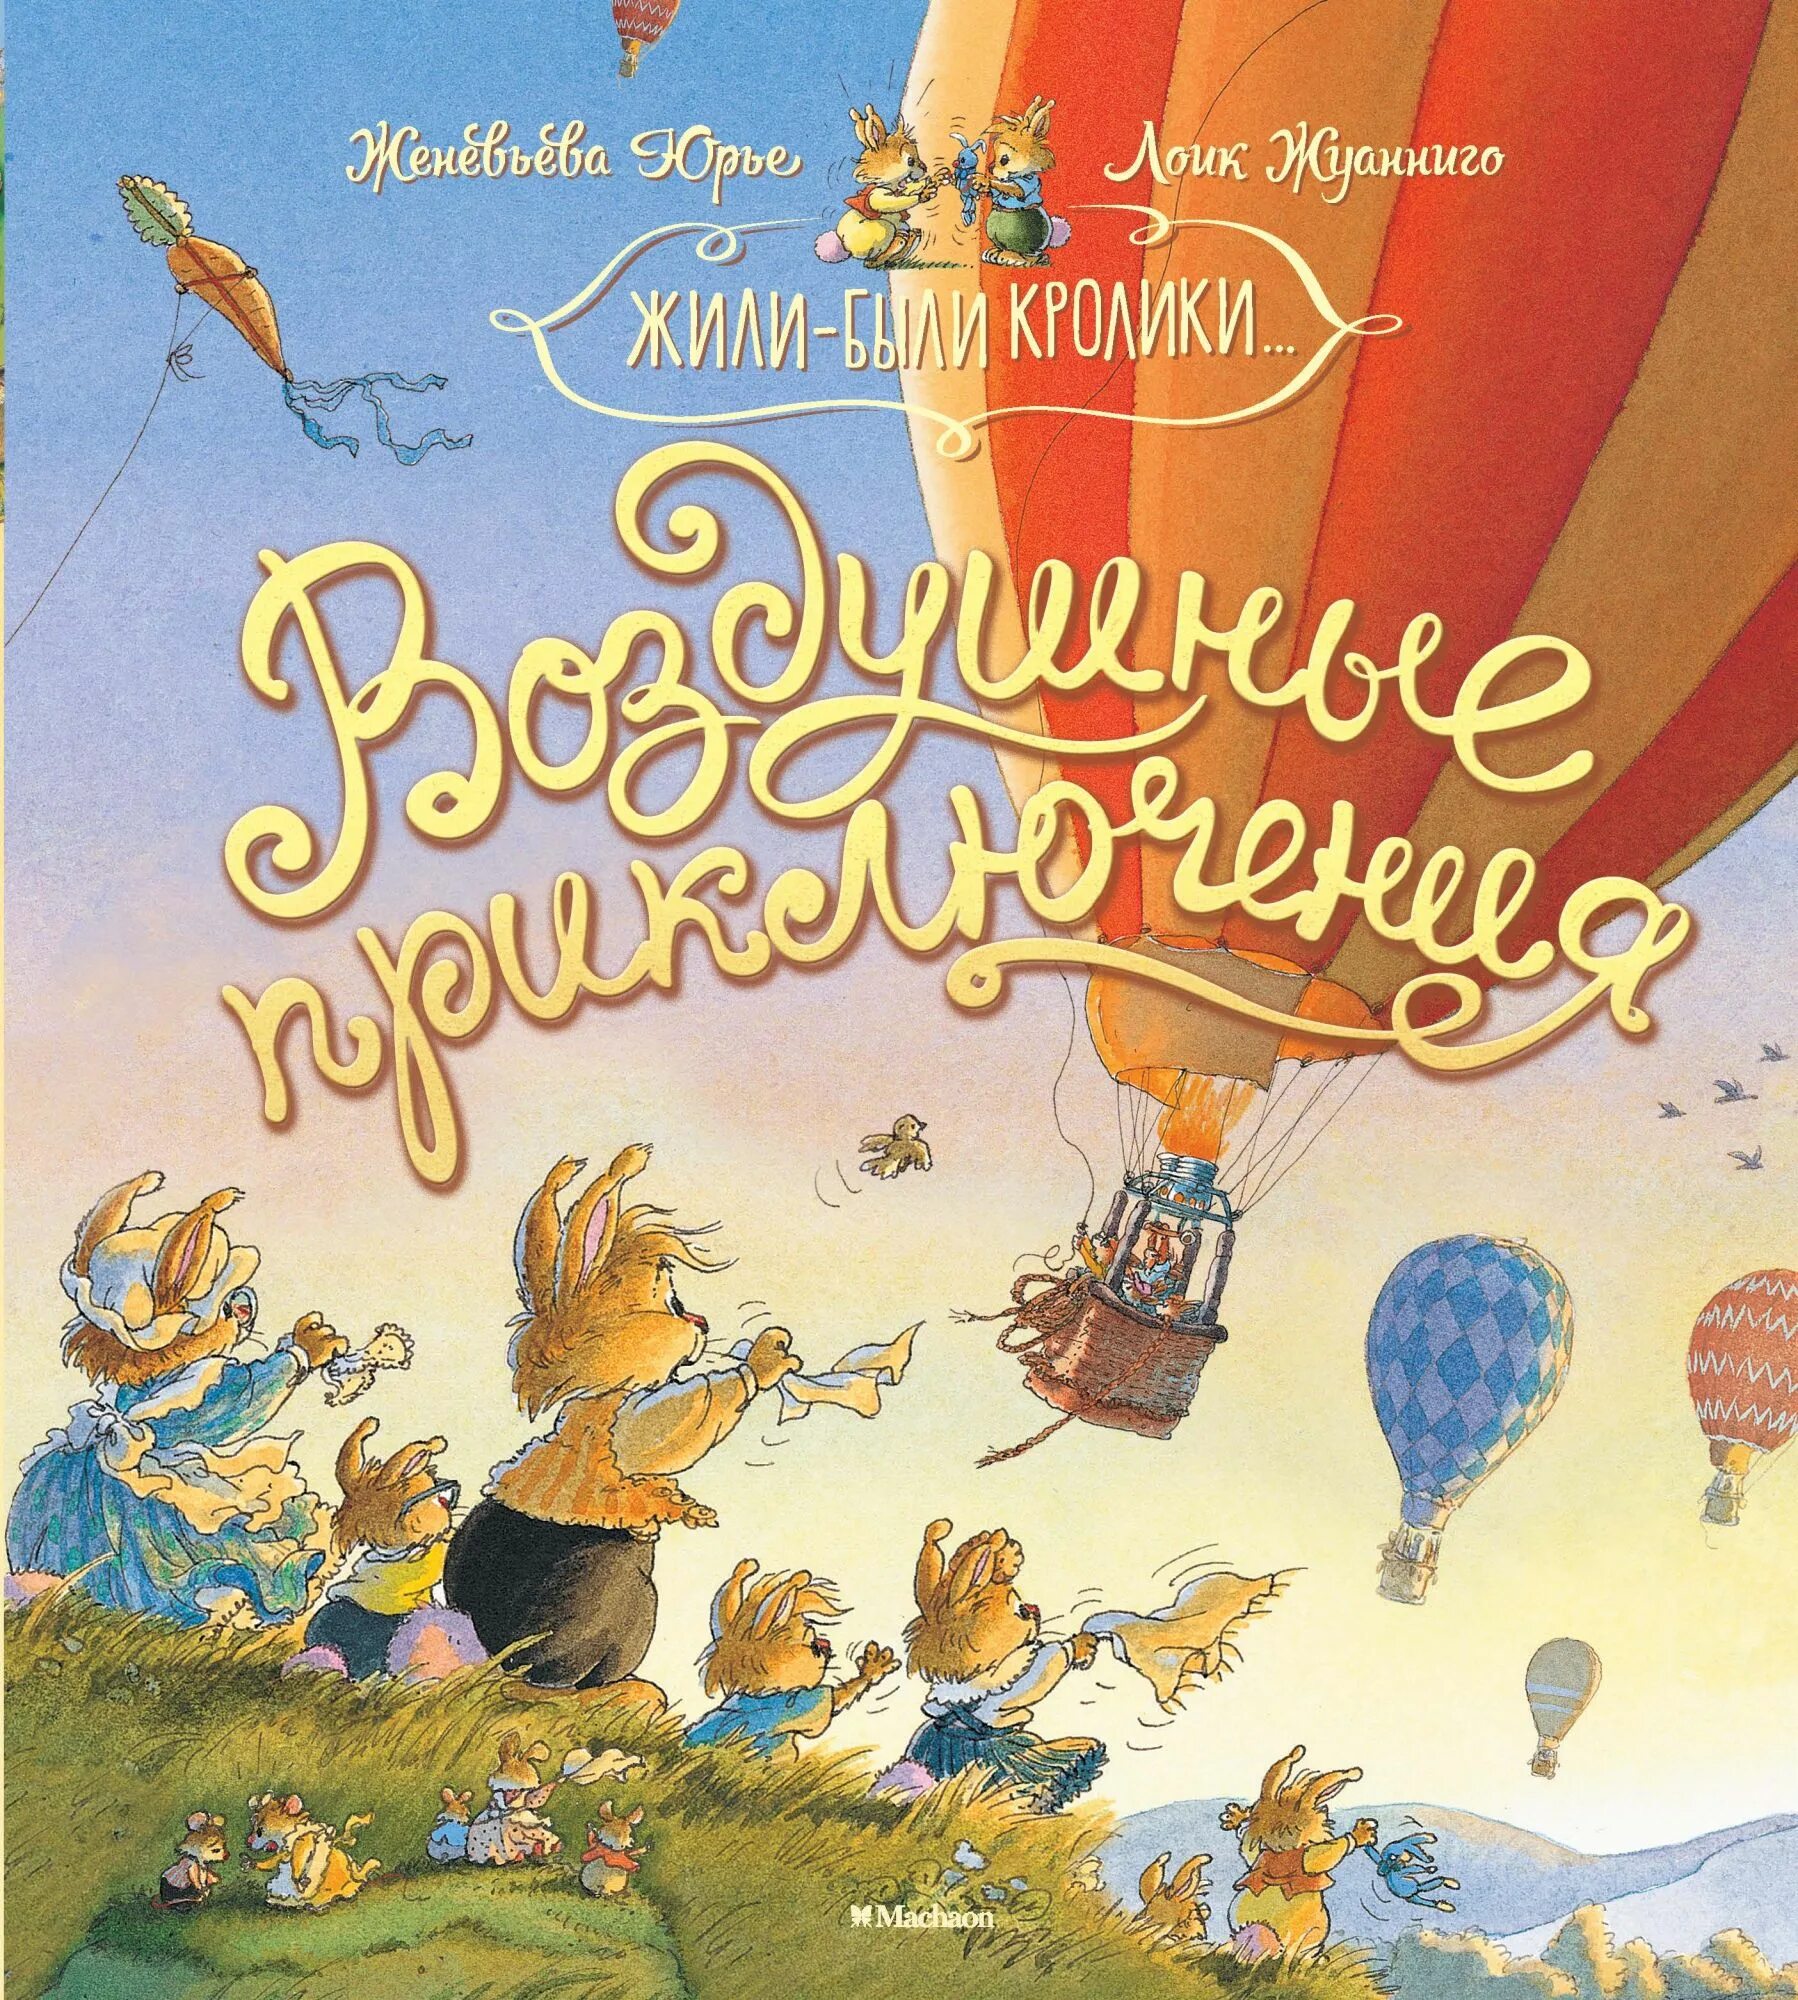 Детские приключения. Женевьева Юрье воздушные приключения. Юрье ж. "жили-были кролики...воздушные приключения". Детские книги приключения. Книги приключения для детей.